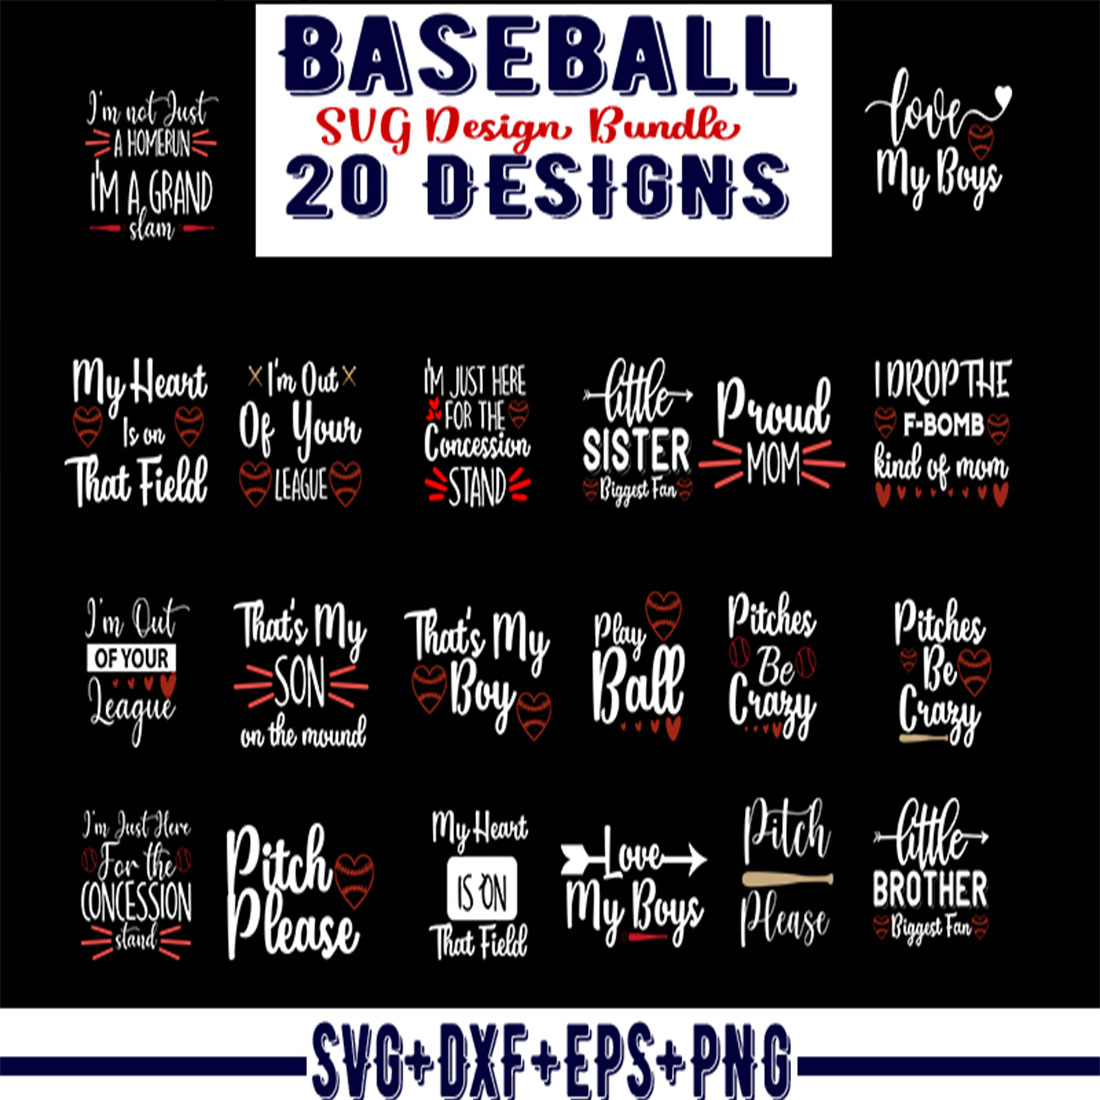 Baseball SVG Design Bundle cover image.